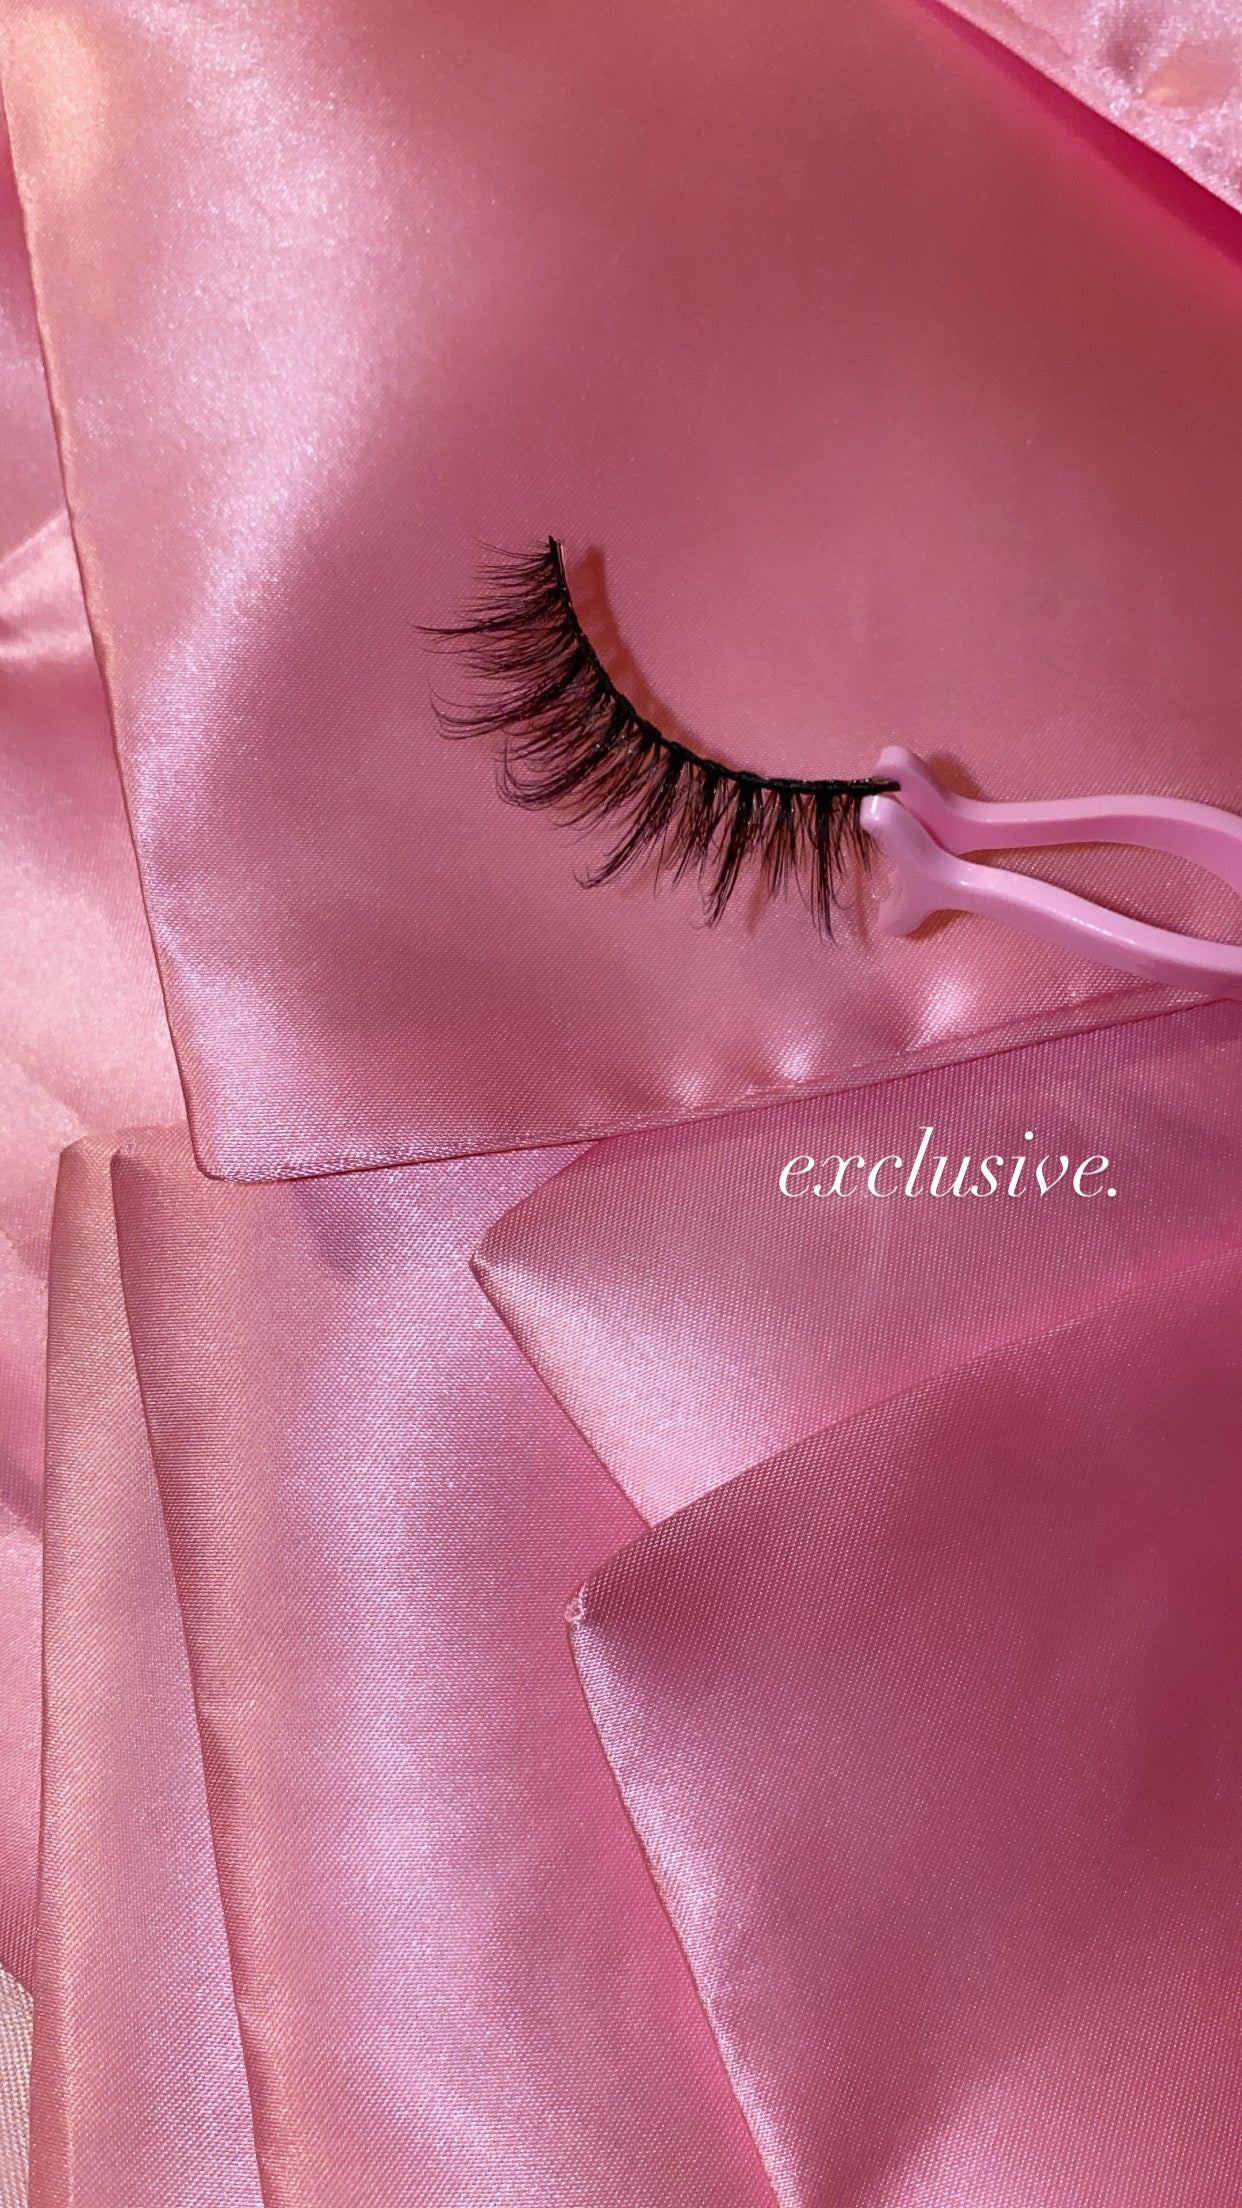 ‘exclusive’ lash